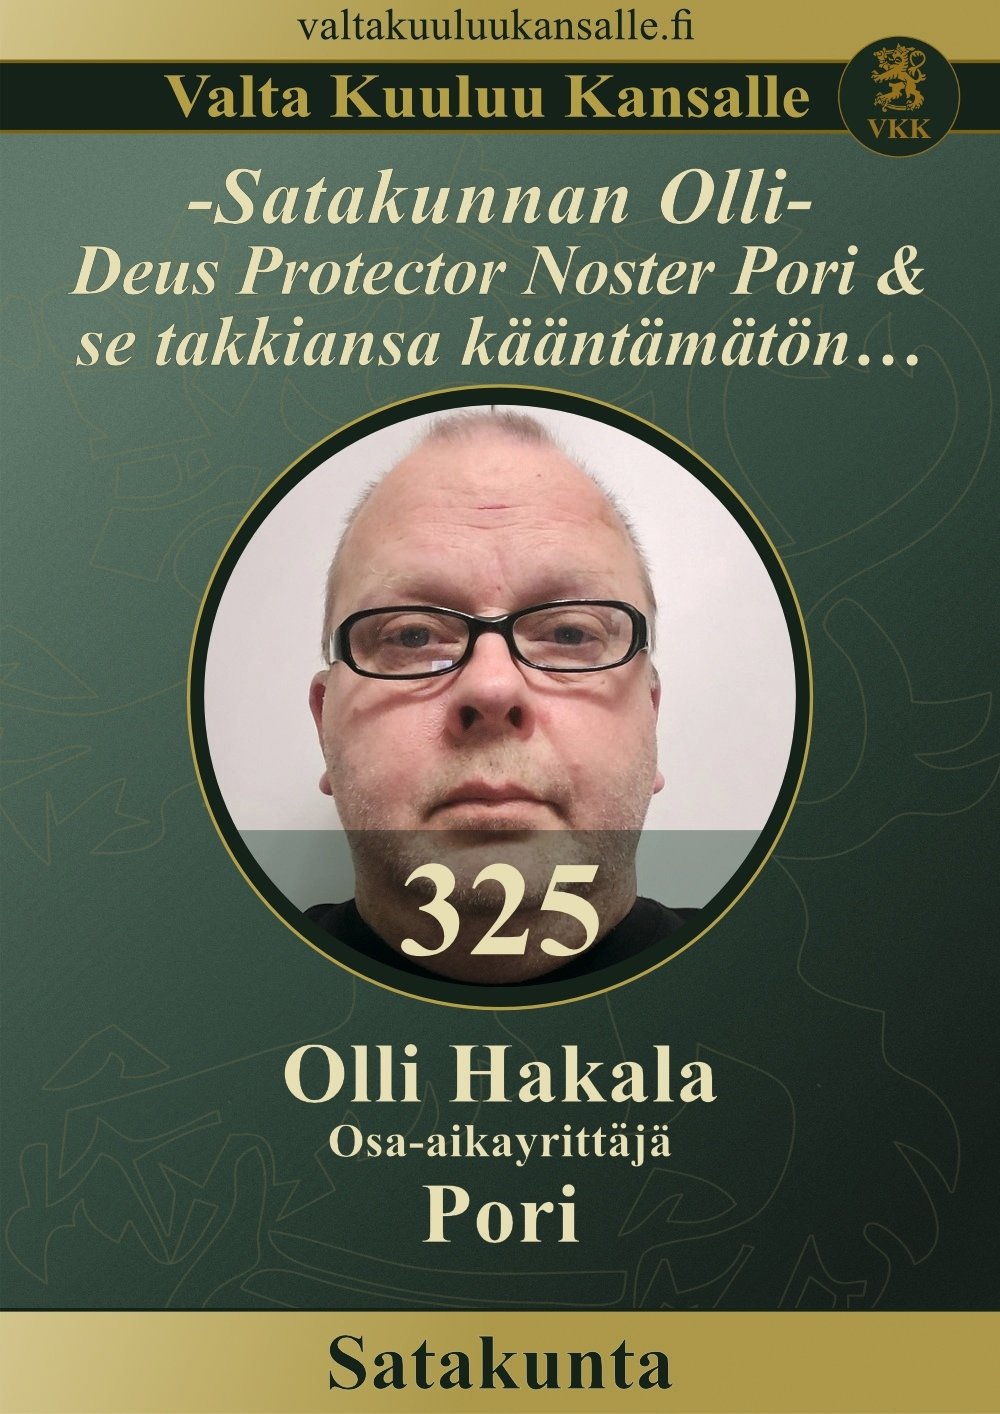 325 - Olli Hakala - Pori - VKK